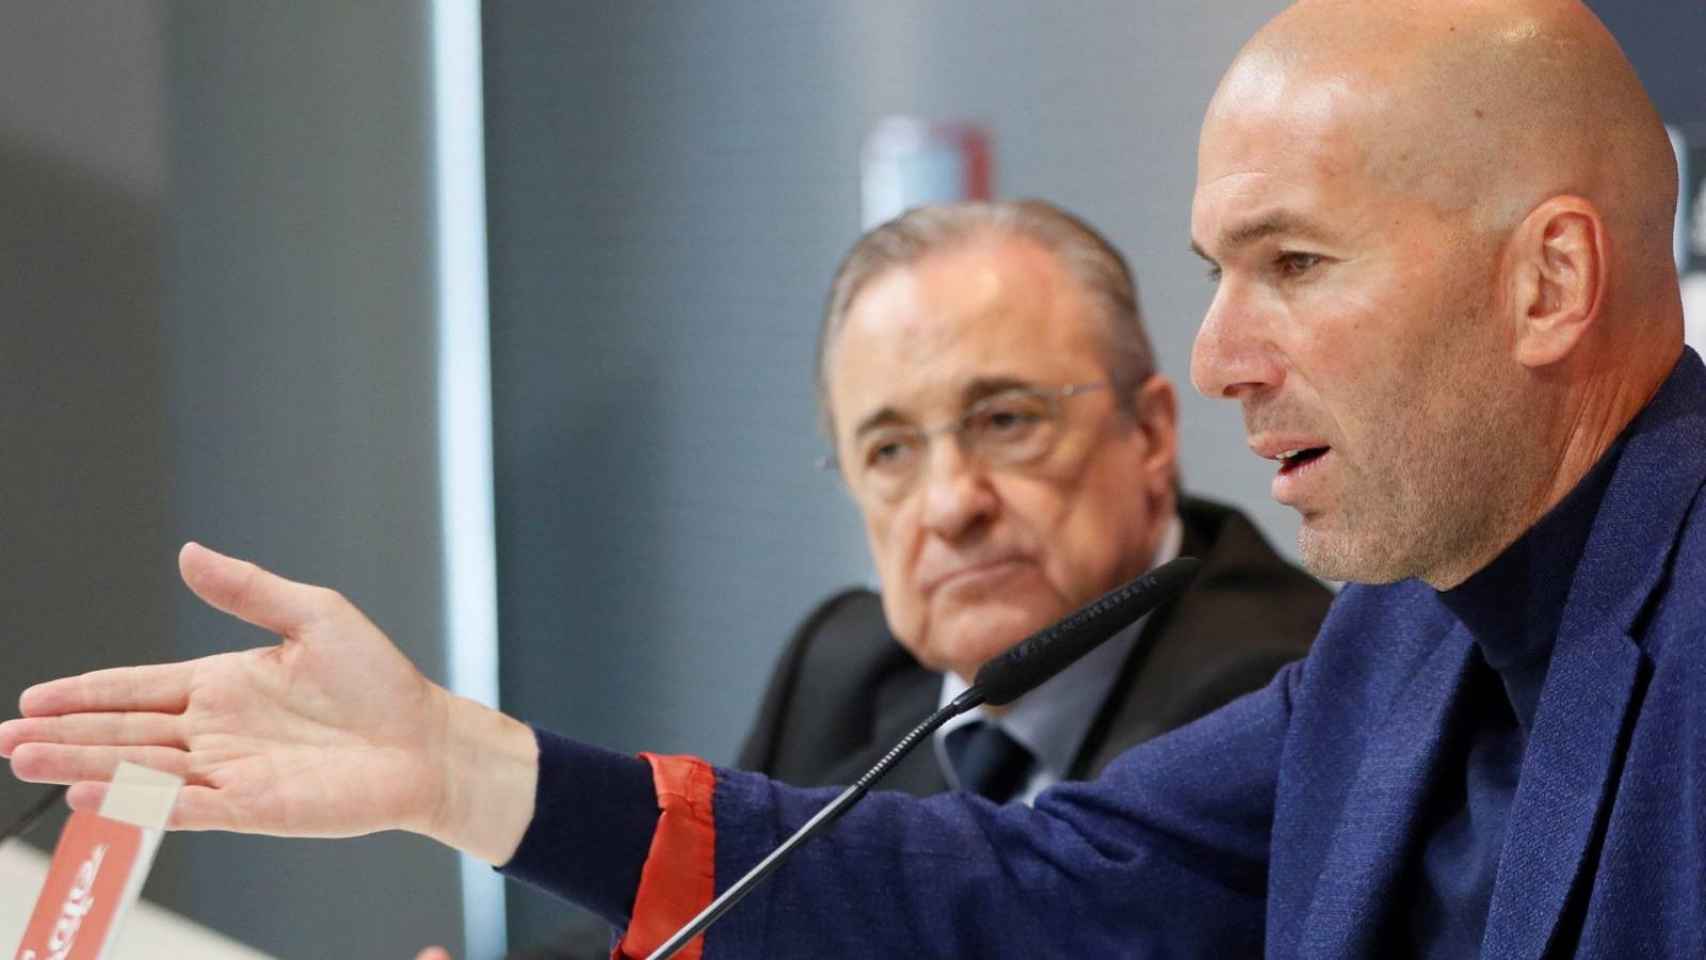 Florentino Pérez y Zinedine Zidane, en la rueda de prensa de despedida del técnico galo / EFE